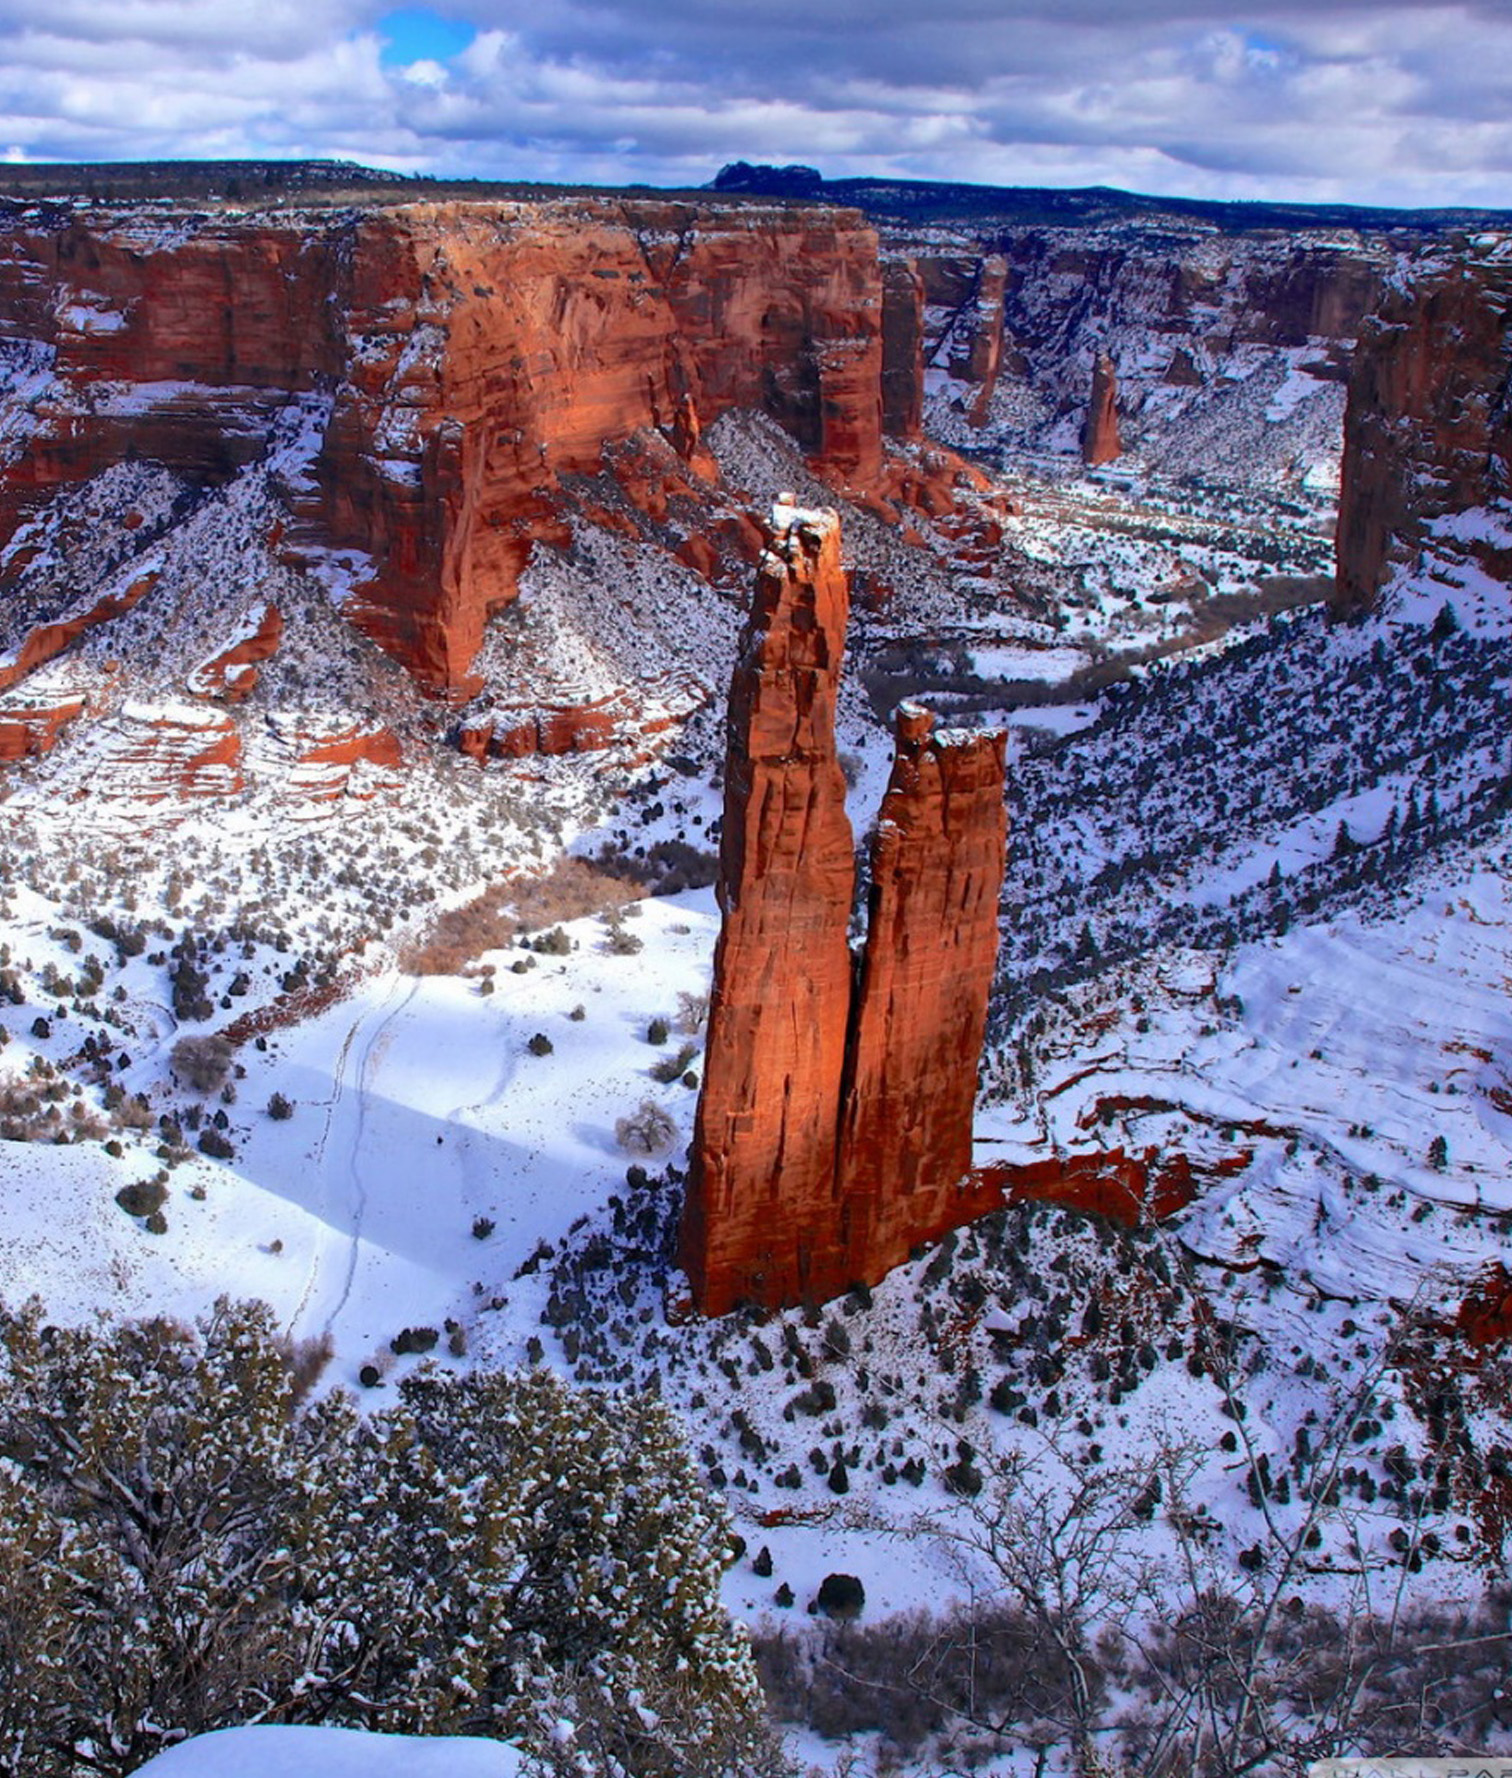 Discover Navajo Navajo Nation Tourism Discover Navajo Dine Bikeyah Navajo Tours